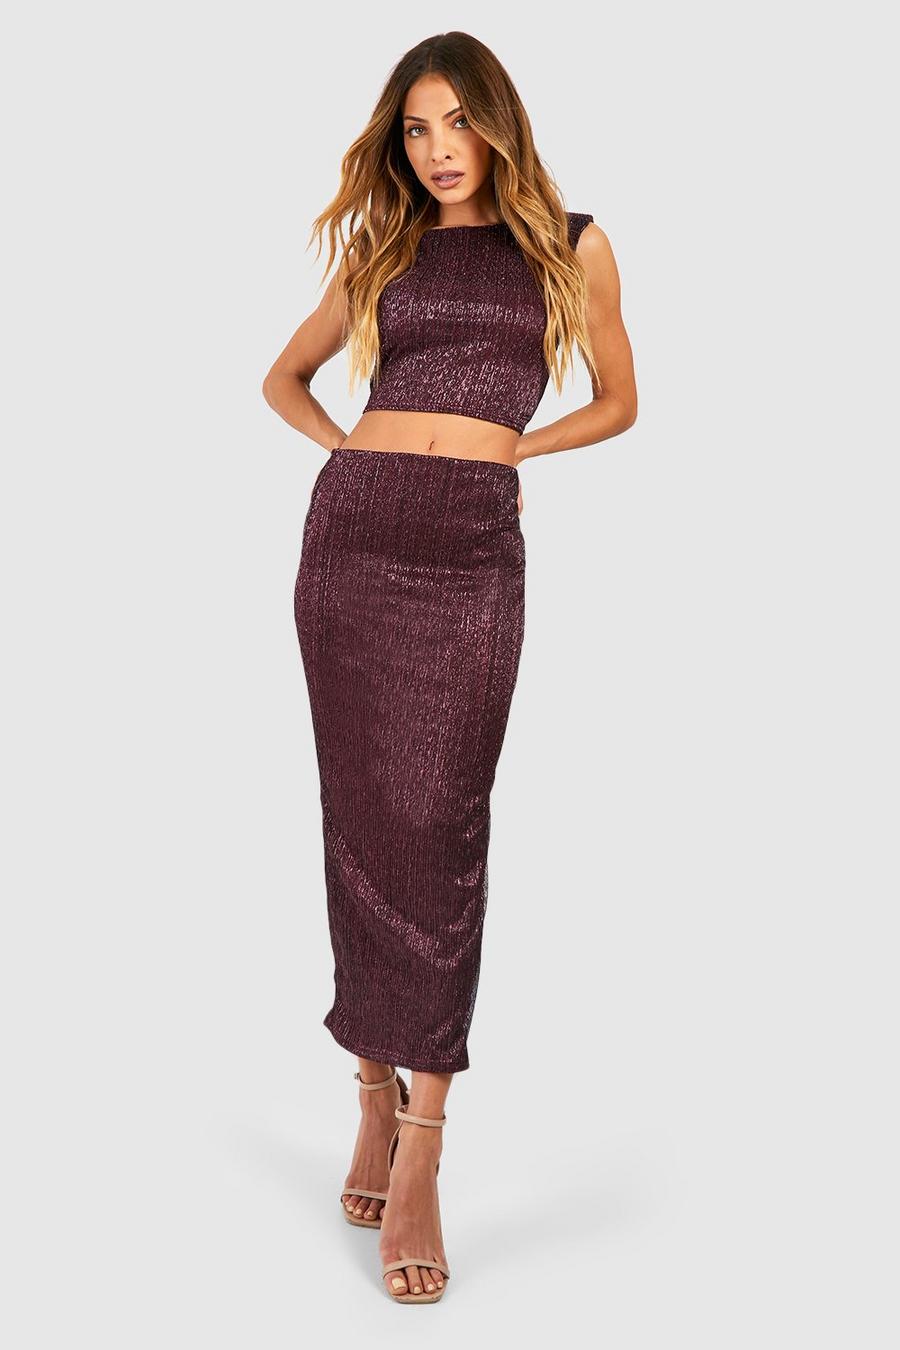 Plum violet Shoulder Pad Glitter Ruched Top & Midaxi Skirt Set